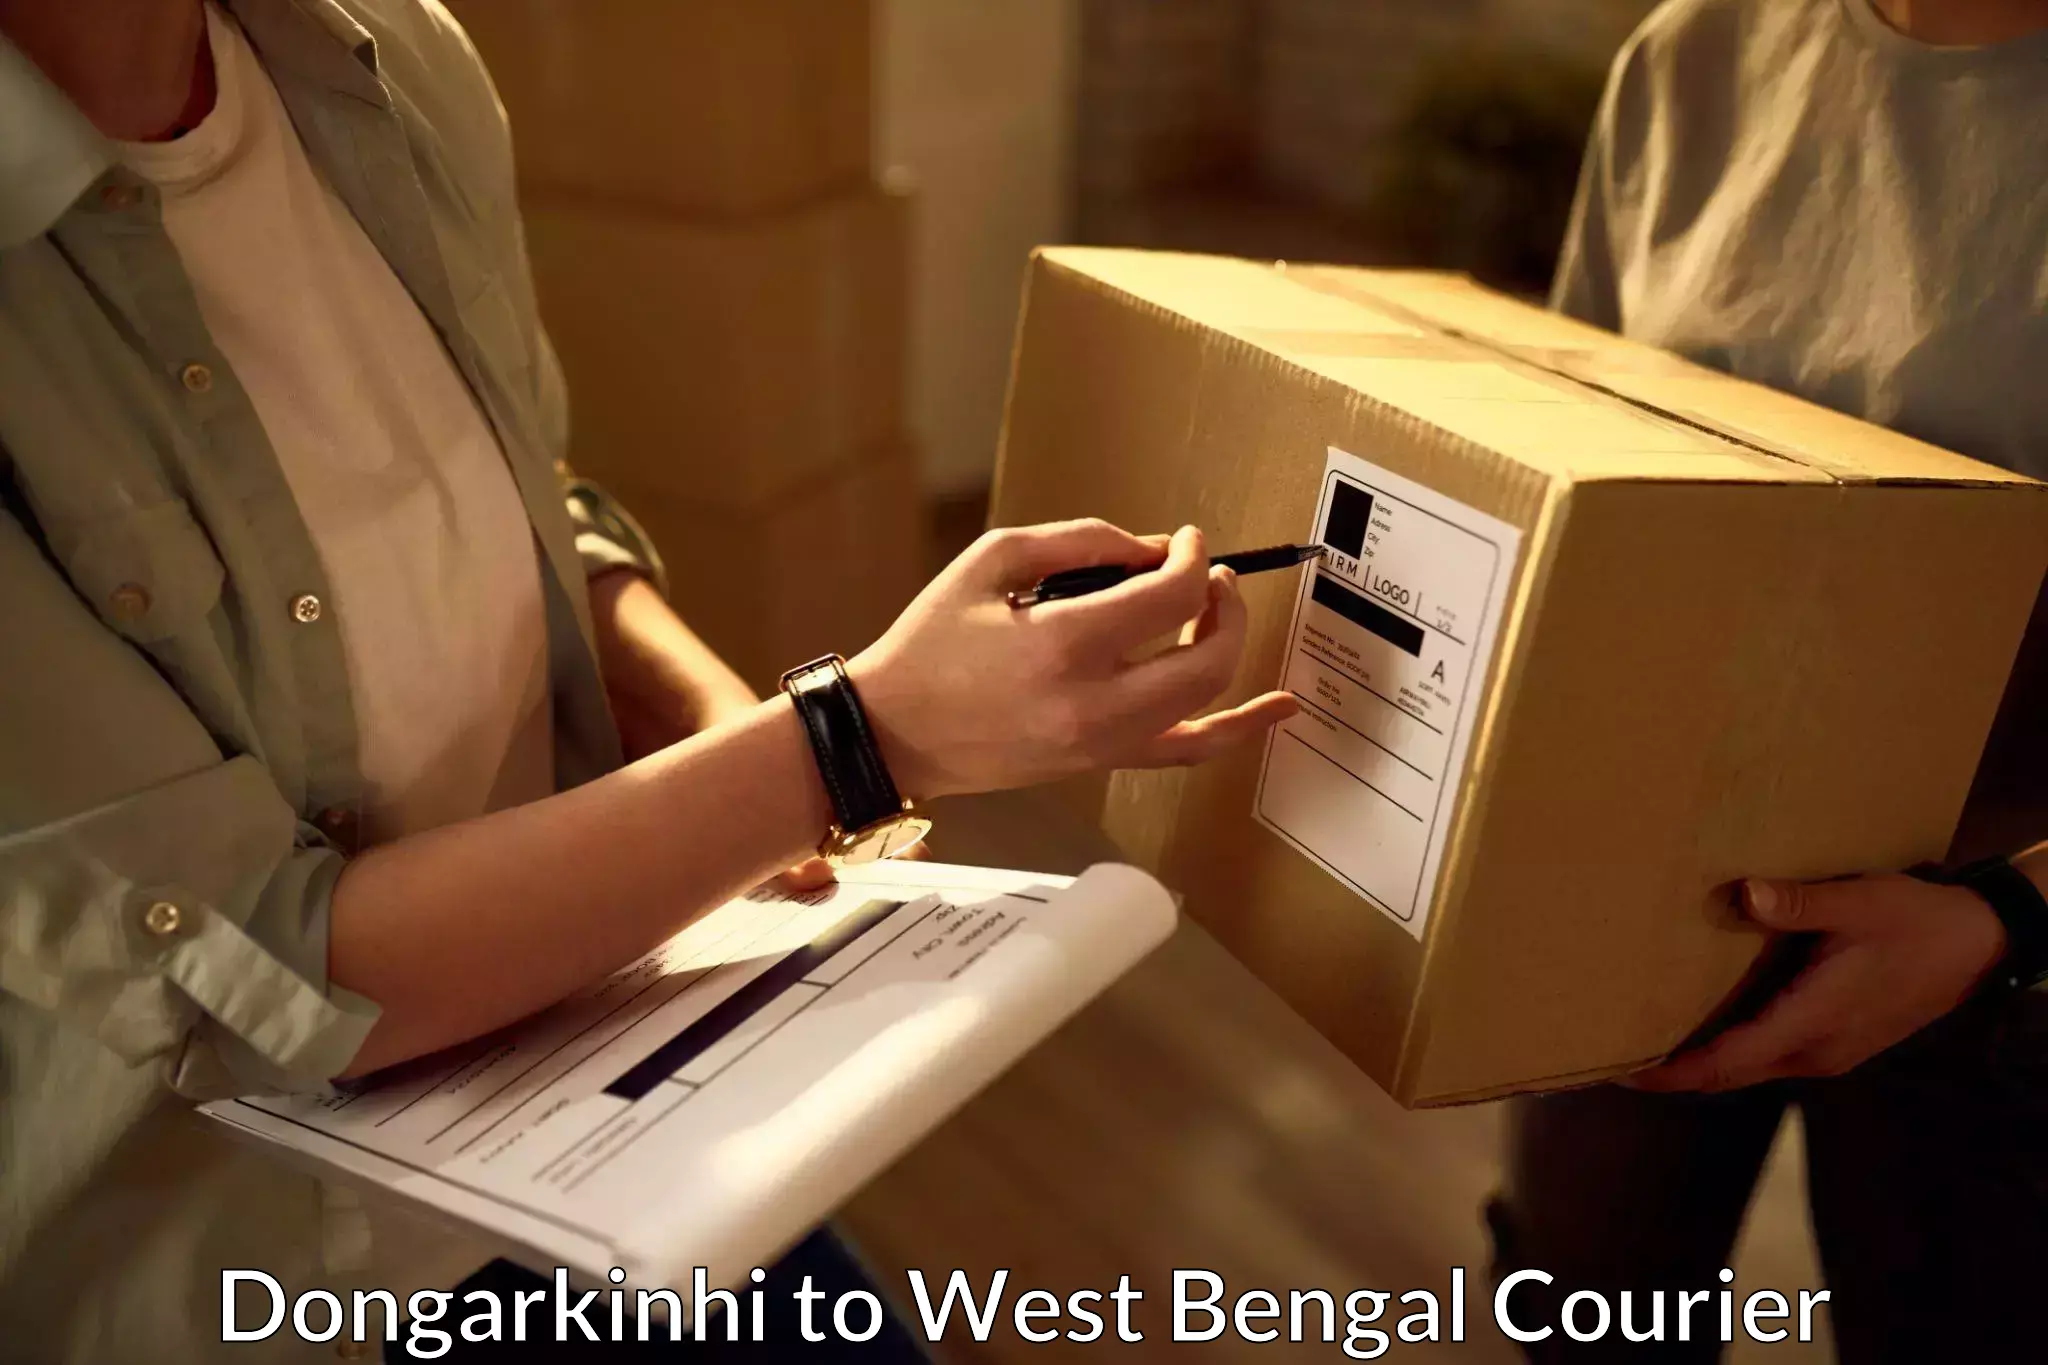 Express package handling Dongarkinhi to Bishnupur